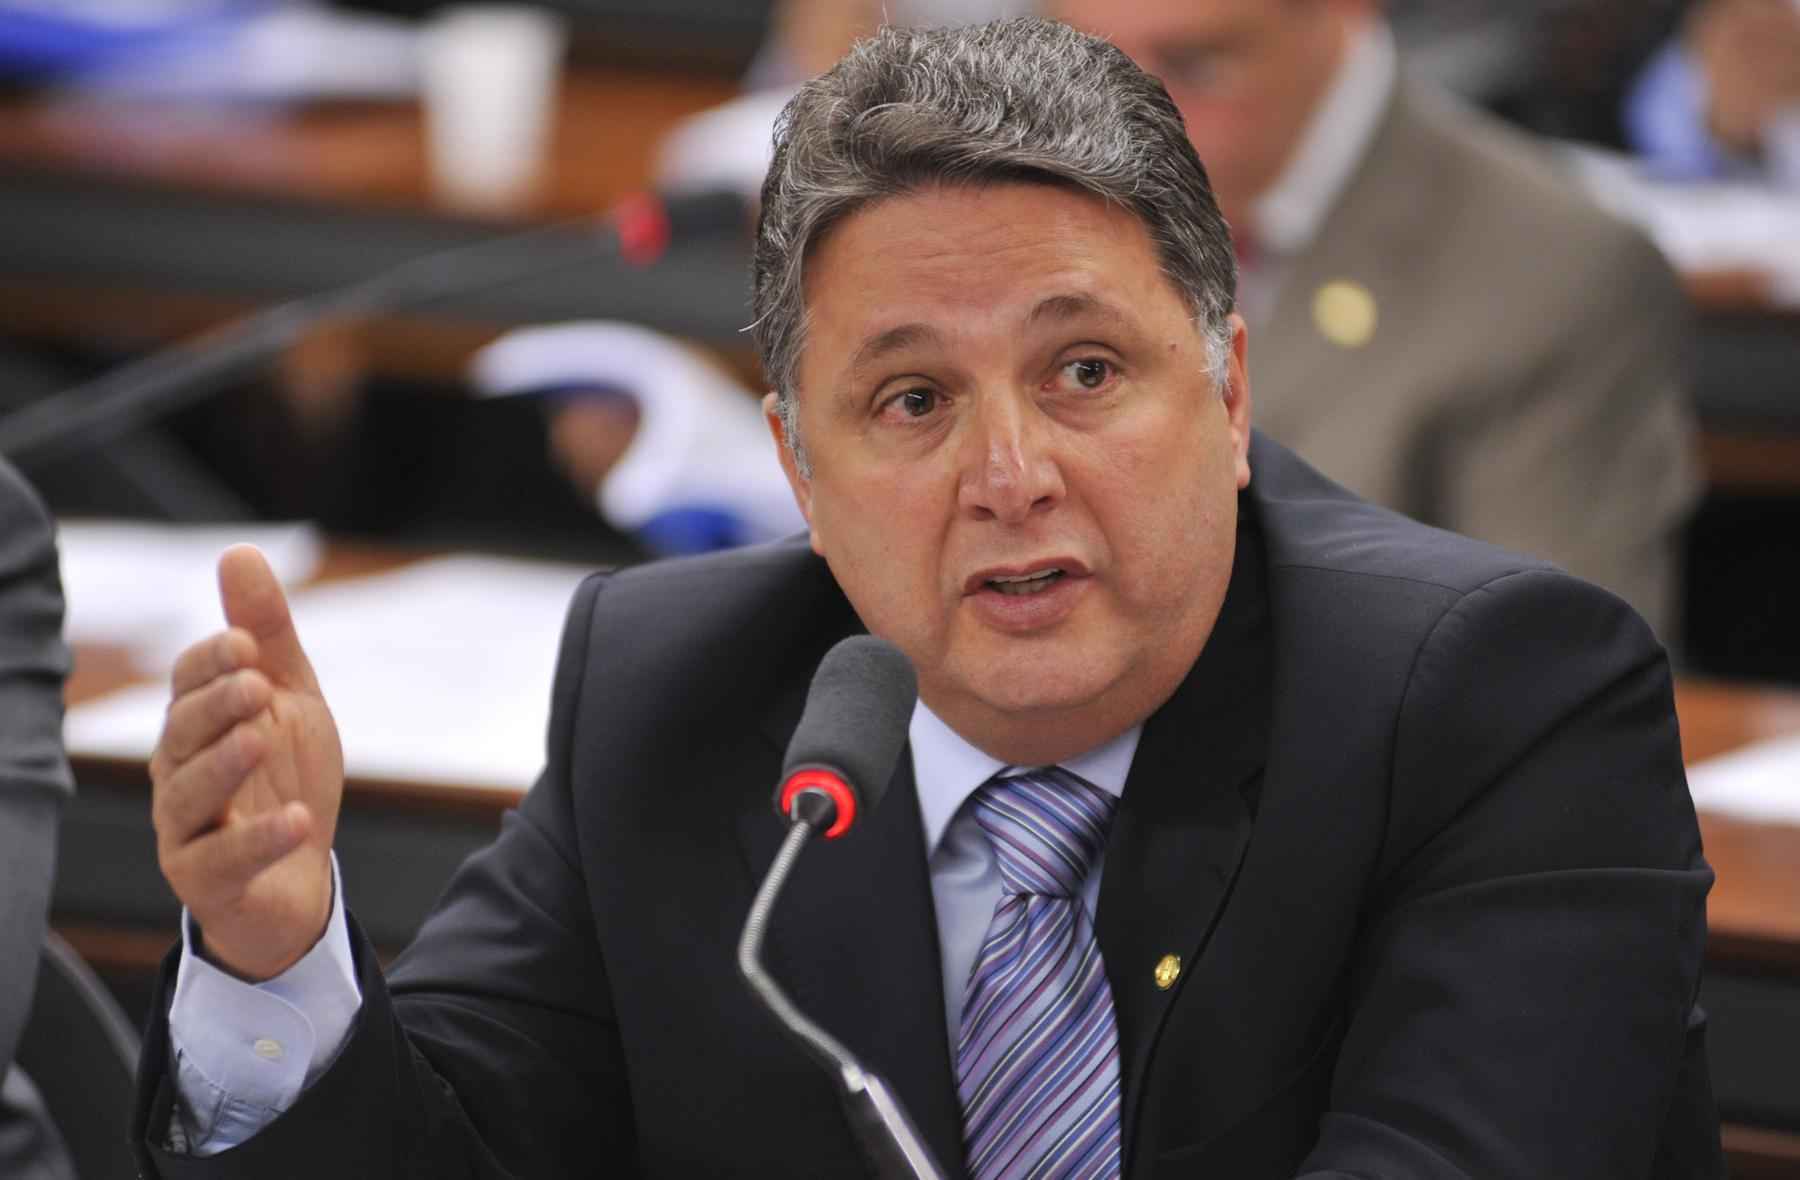 Garotinho desiste de concorrer ao governo do Rio - Leonardo Prado/Câmara dos Deputados
